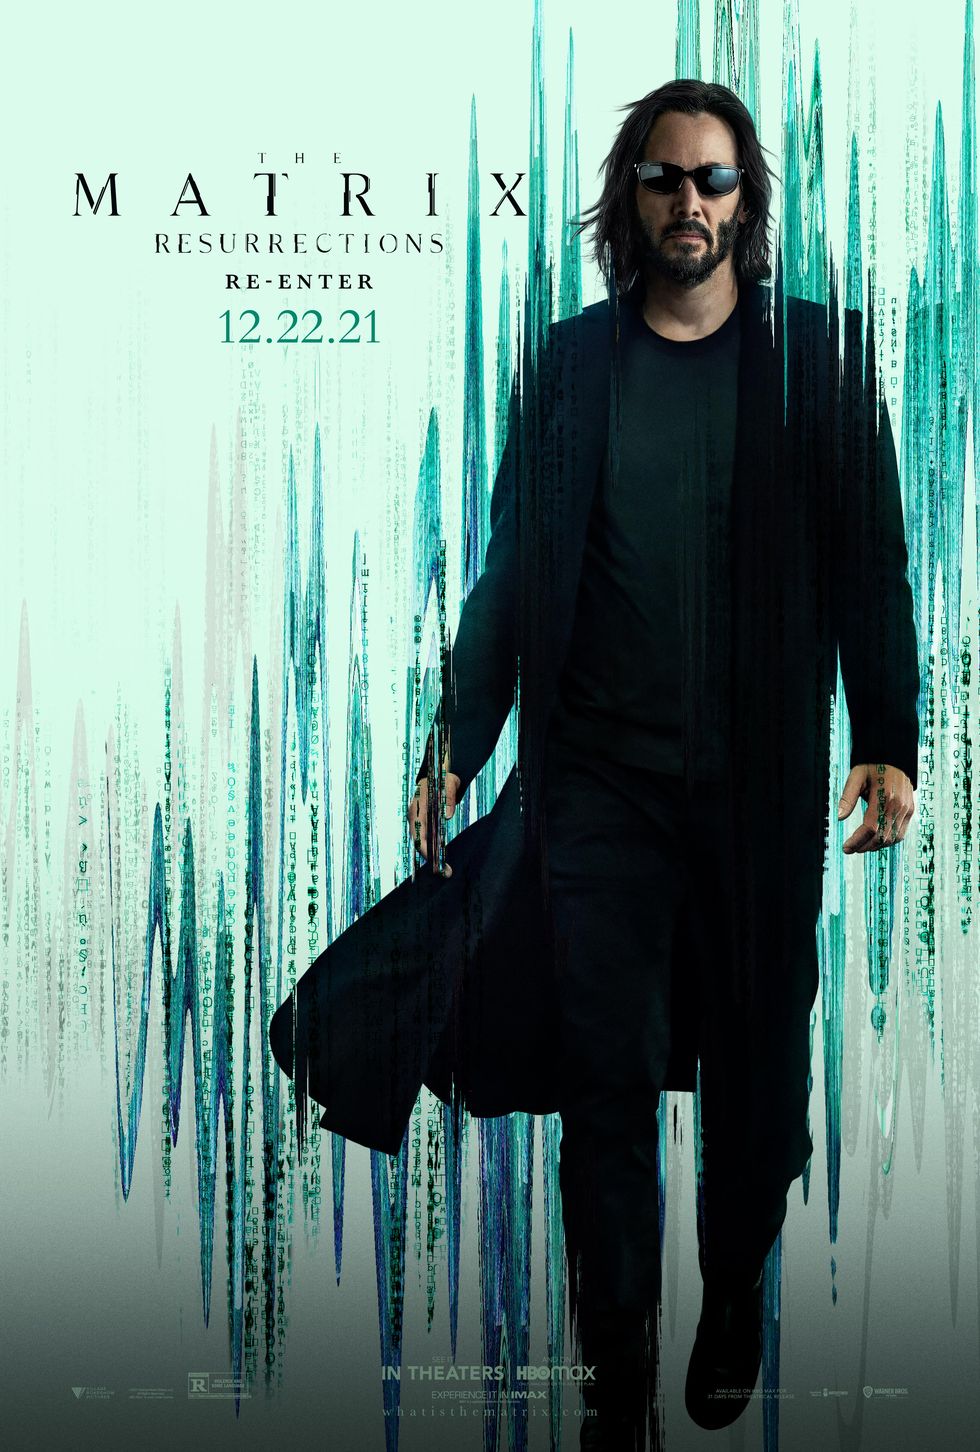 matrix 4 poster